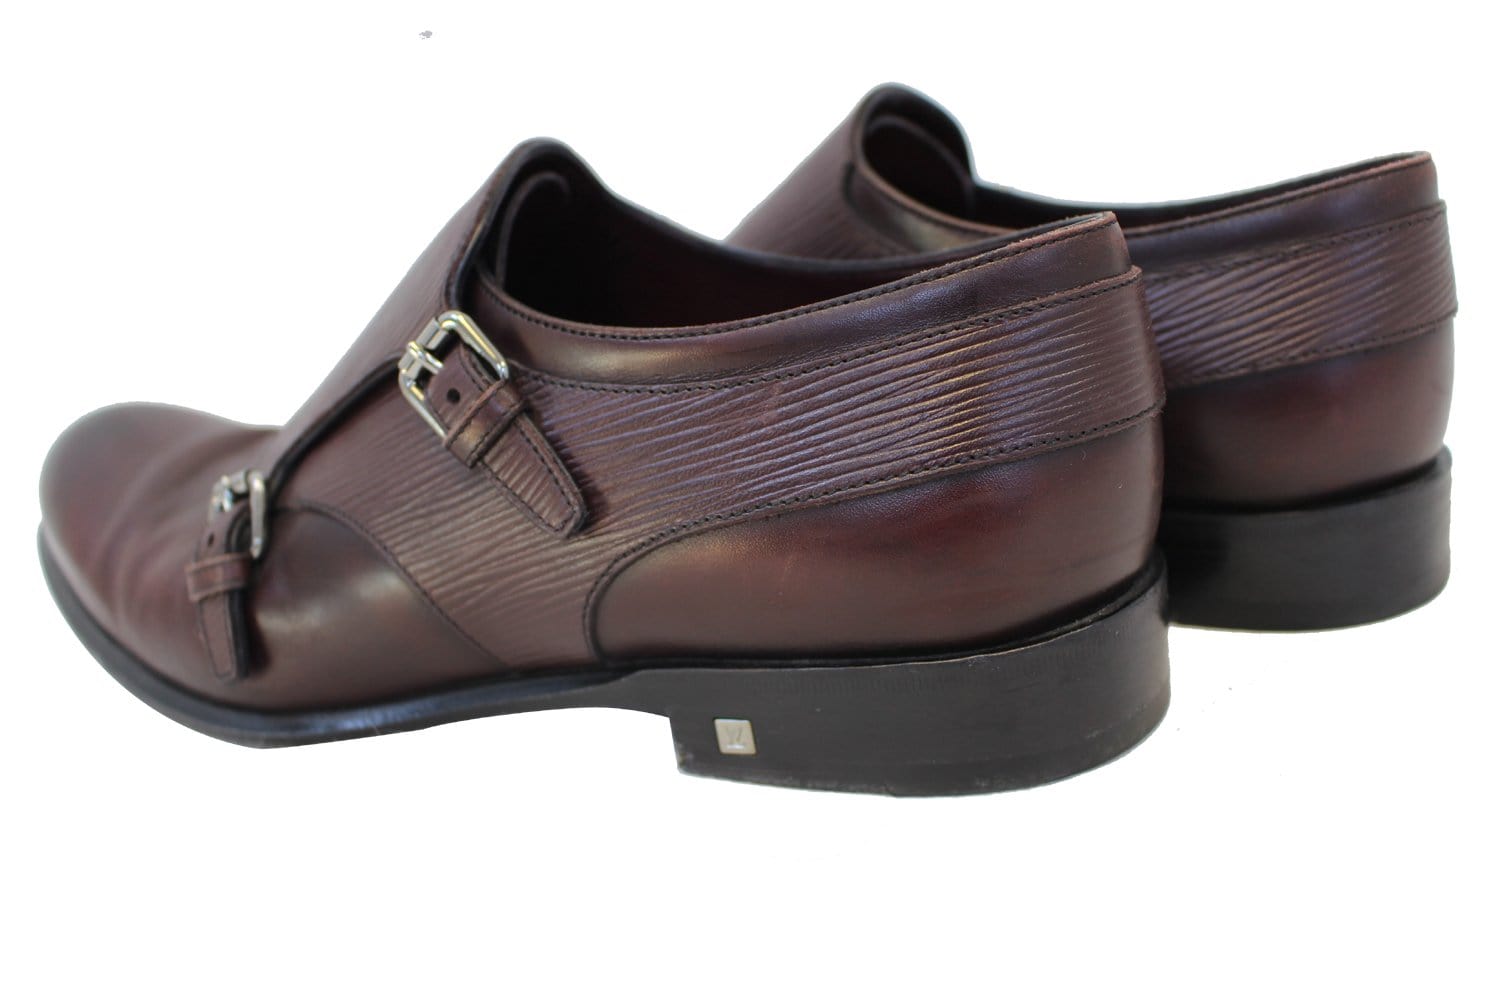 Authentic Louis Vuitton Men Dress Shoes Size 8.5